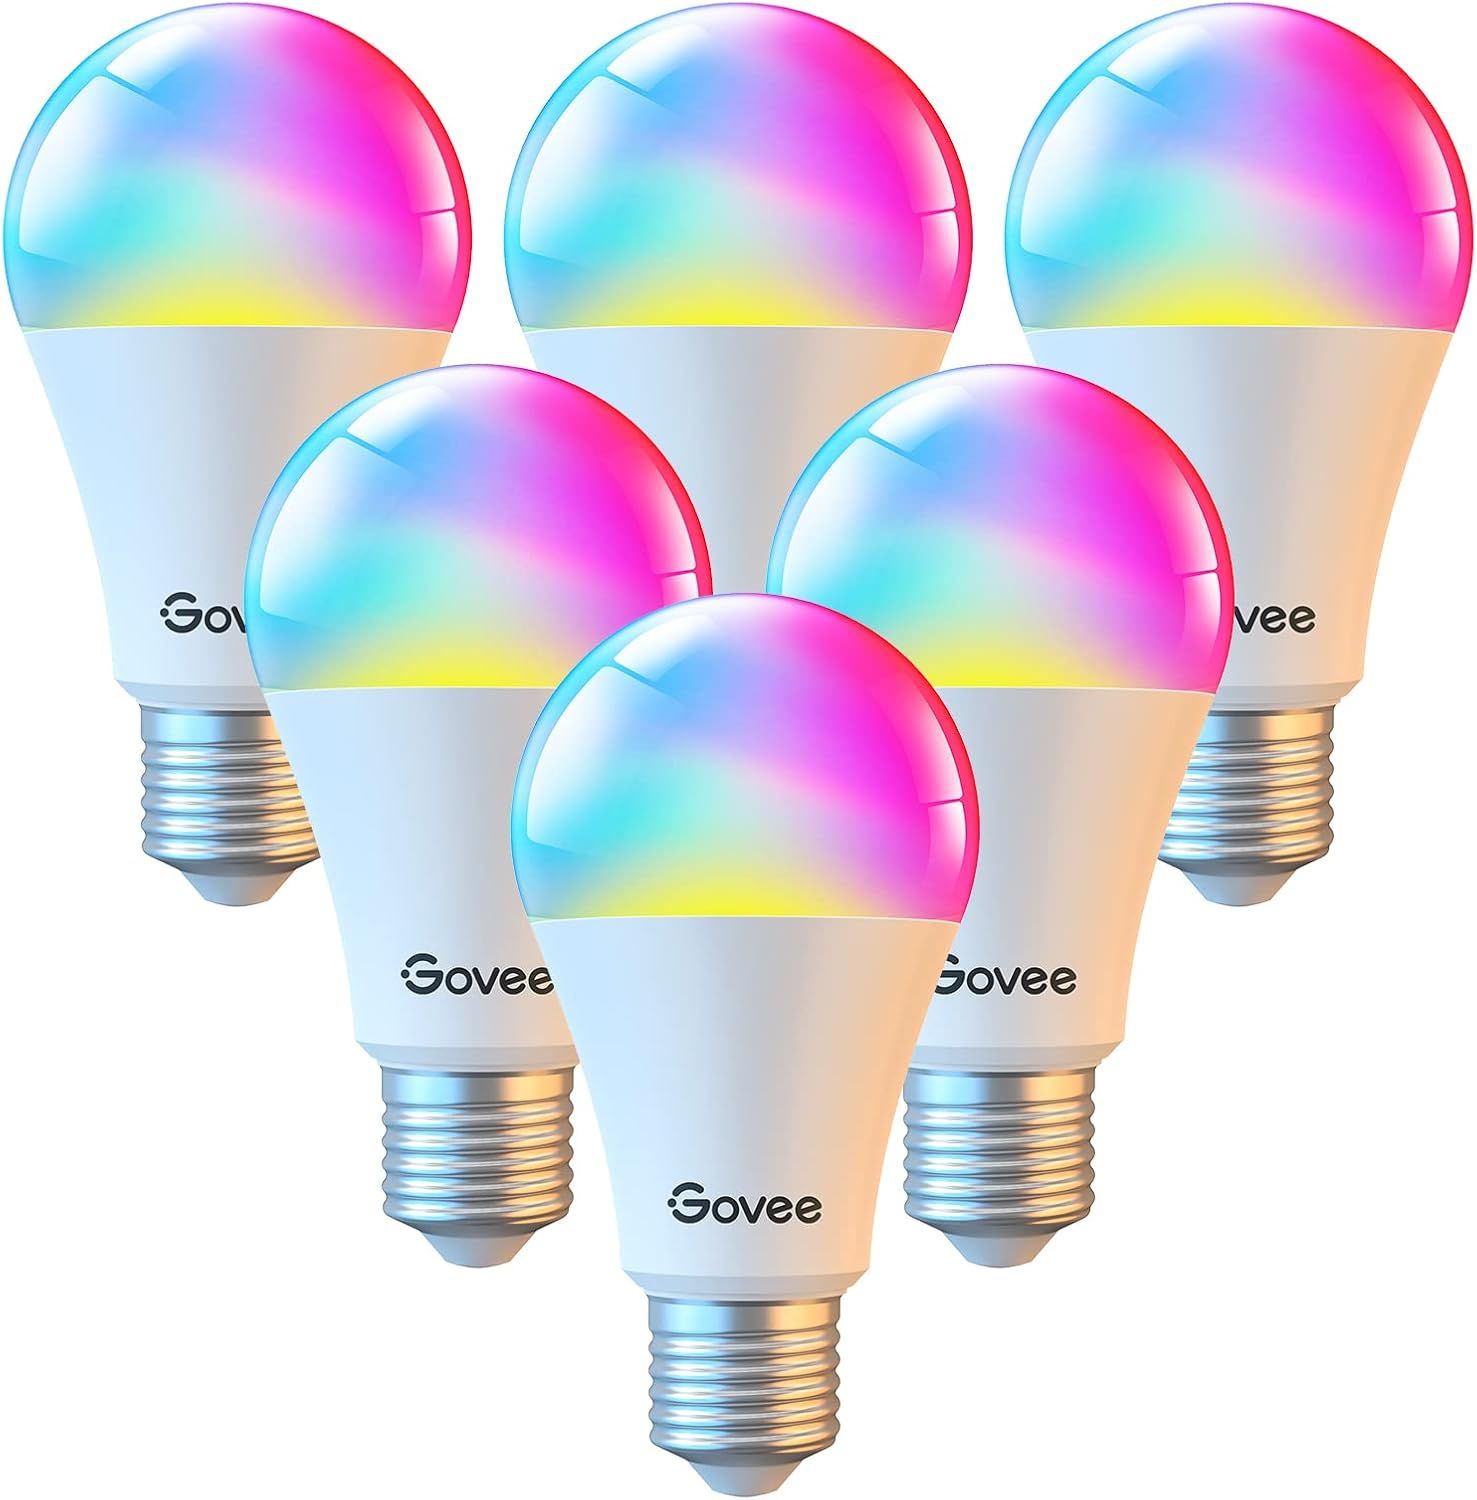 Govee Smart Light Bulbs, Color Changing Light Bulbs, Work with Alexa & Google Assistant, No Hub R... | Amazon (US)